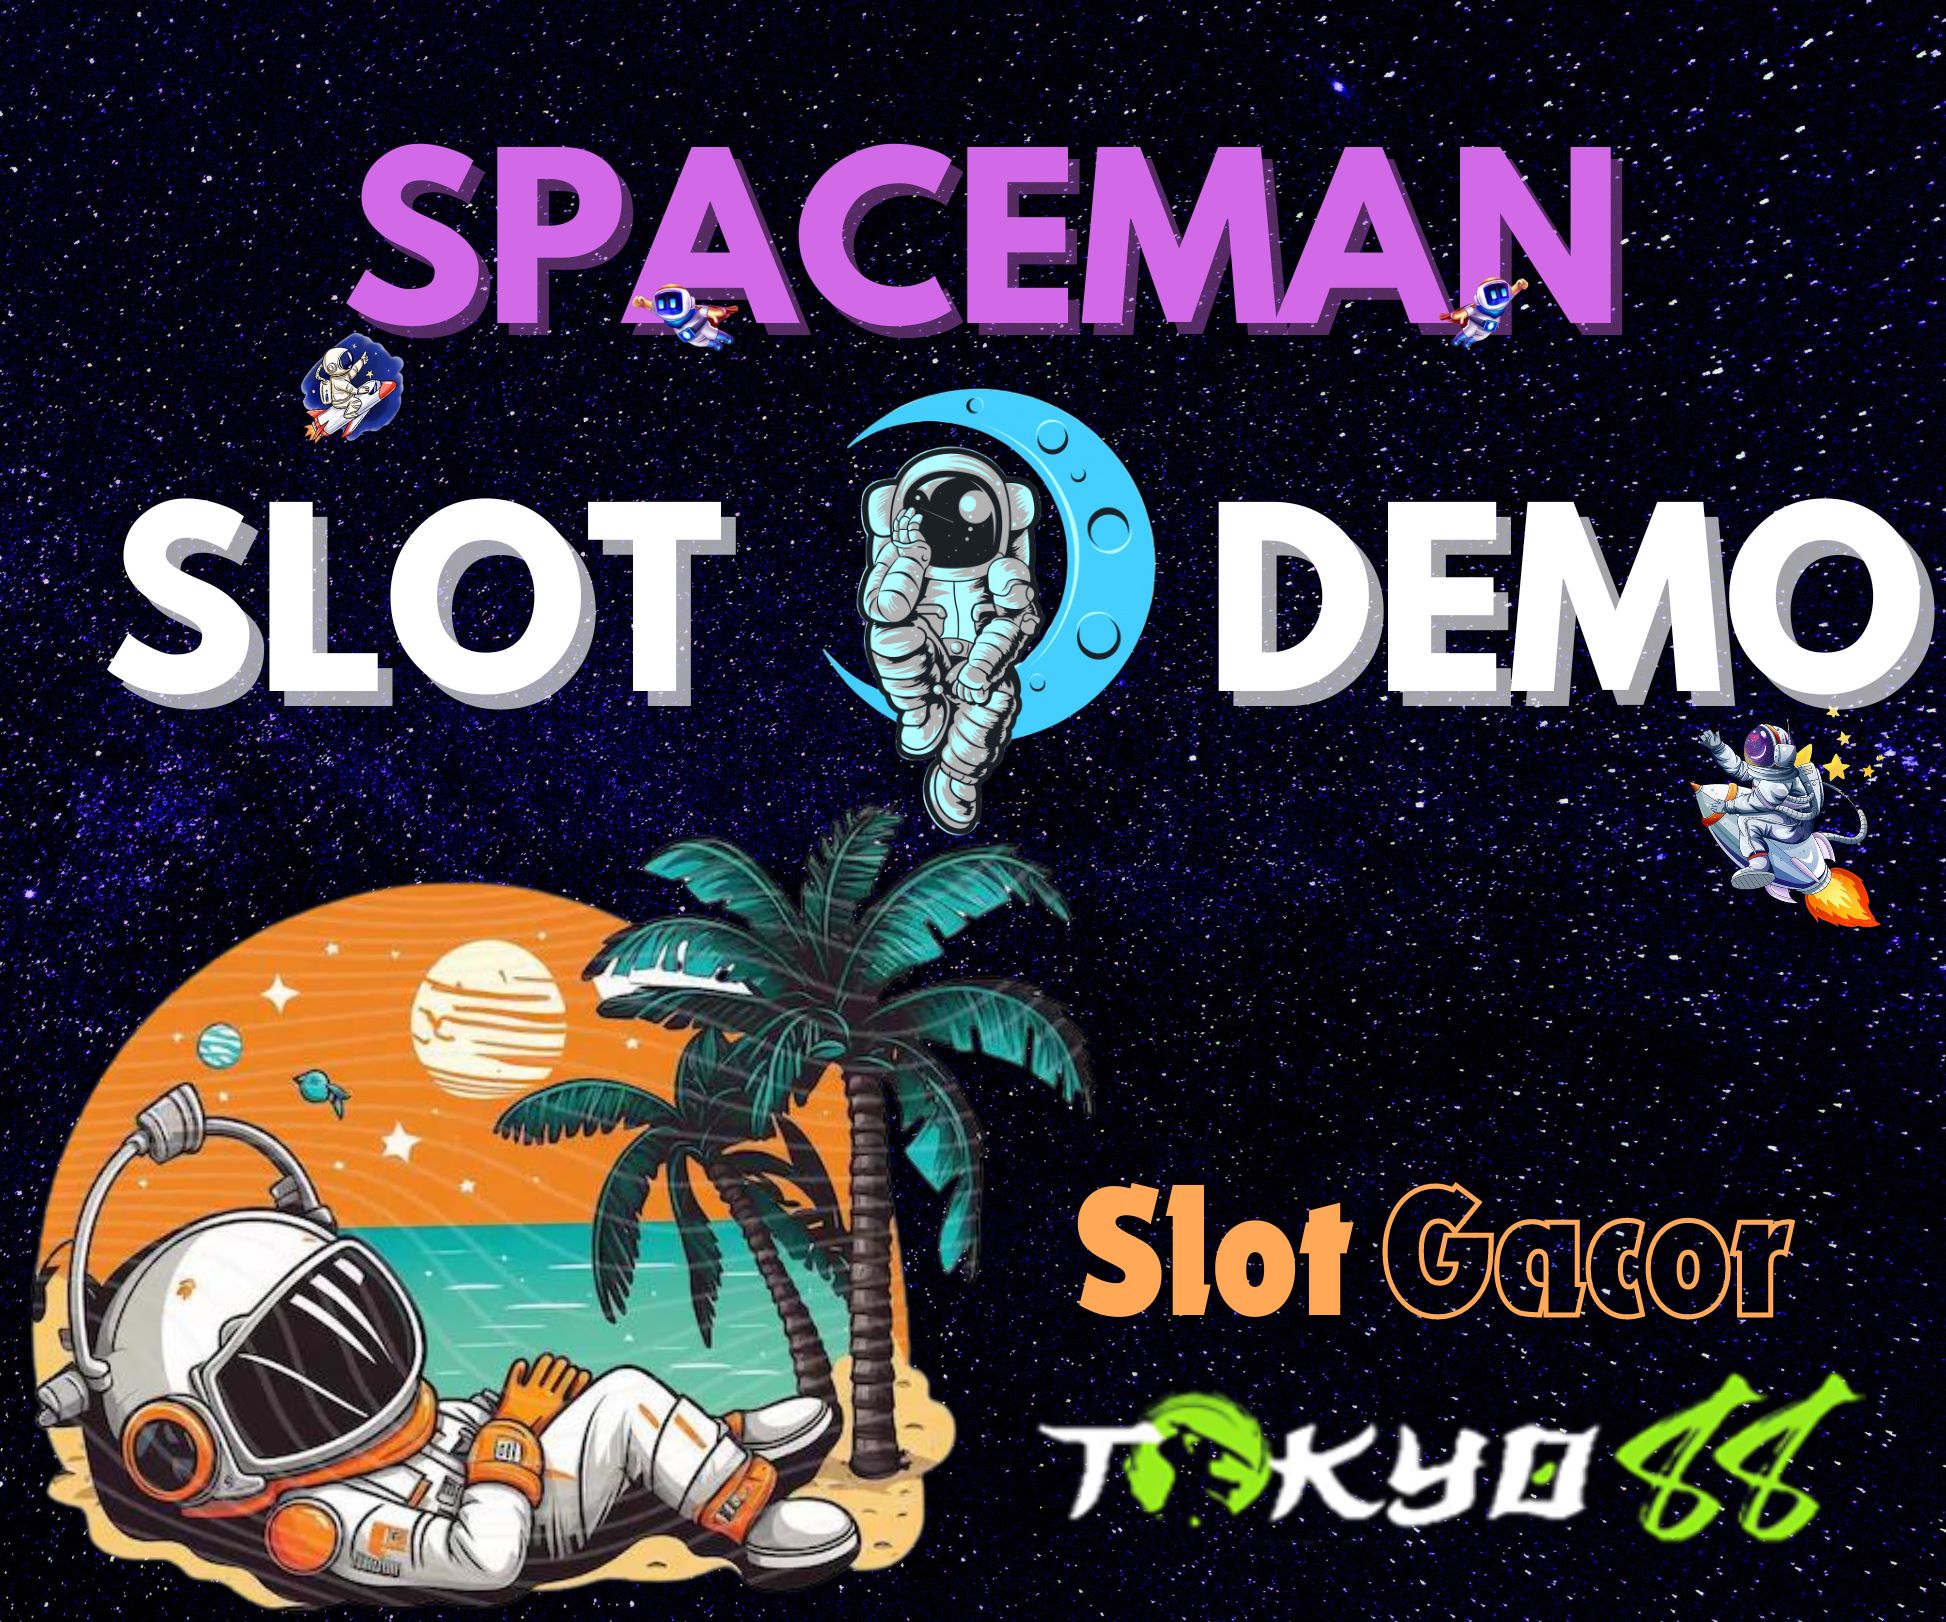 Slot QRIS, Spaceman, and Tangkasnet: A Deep Dive